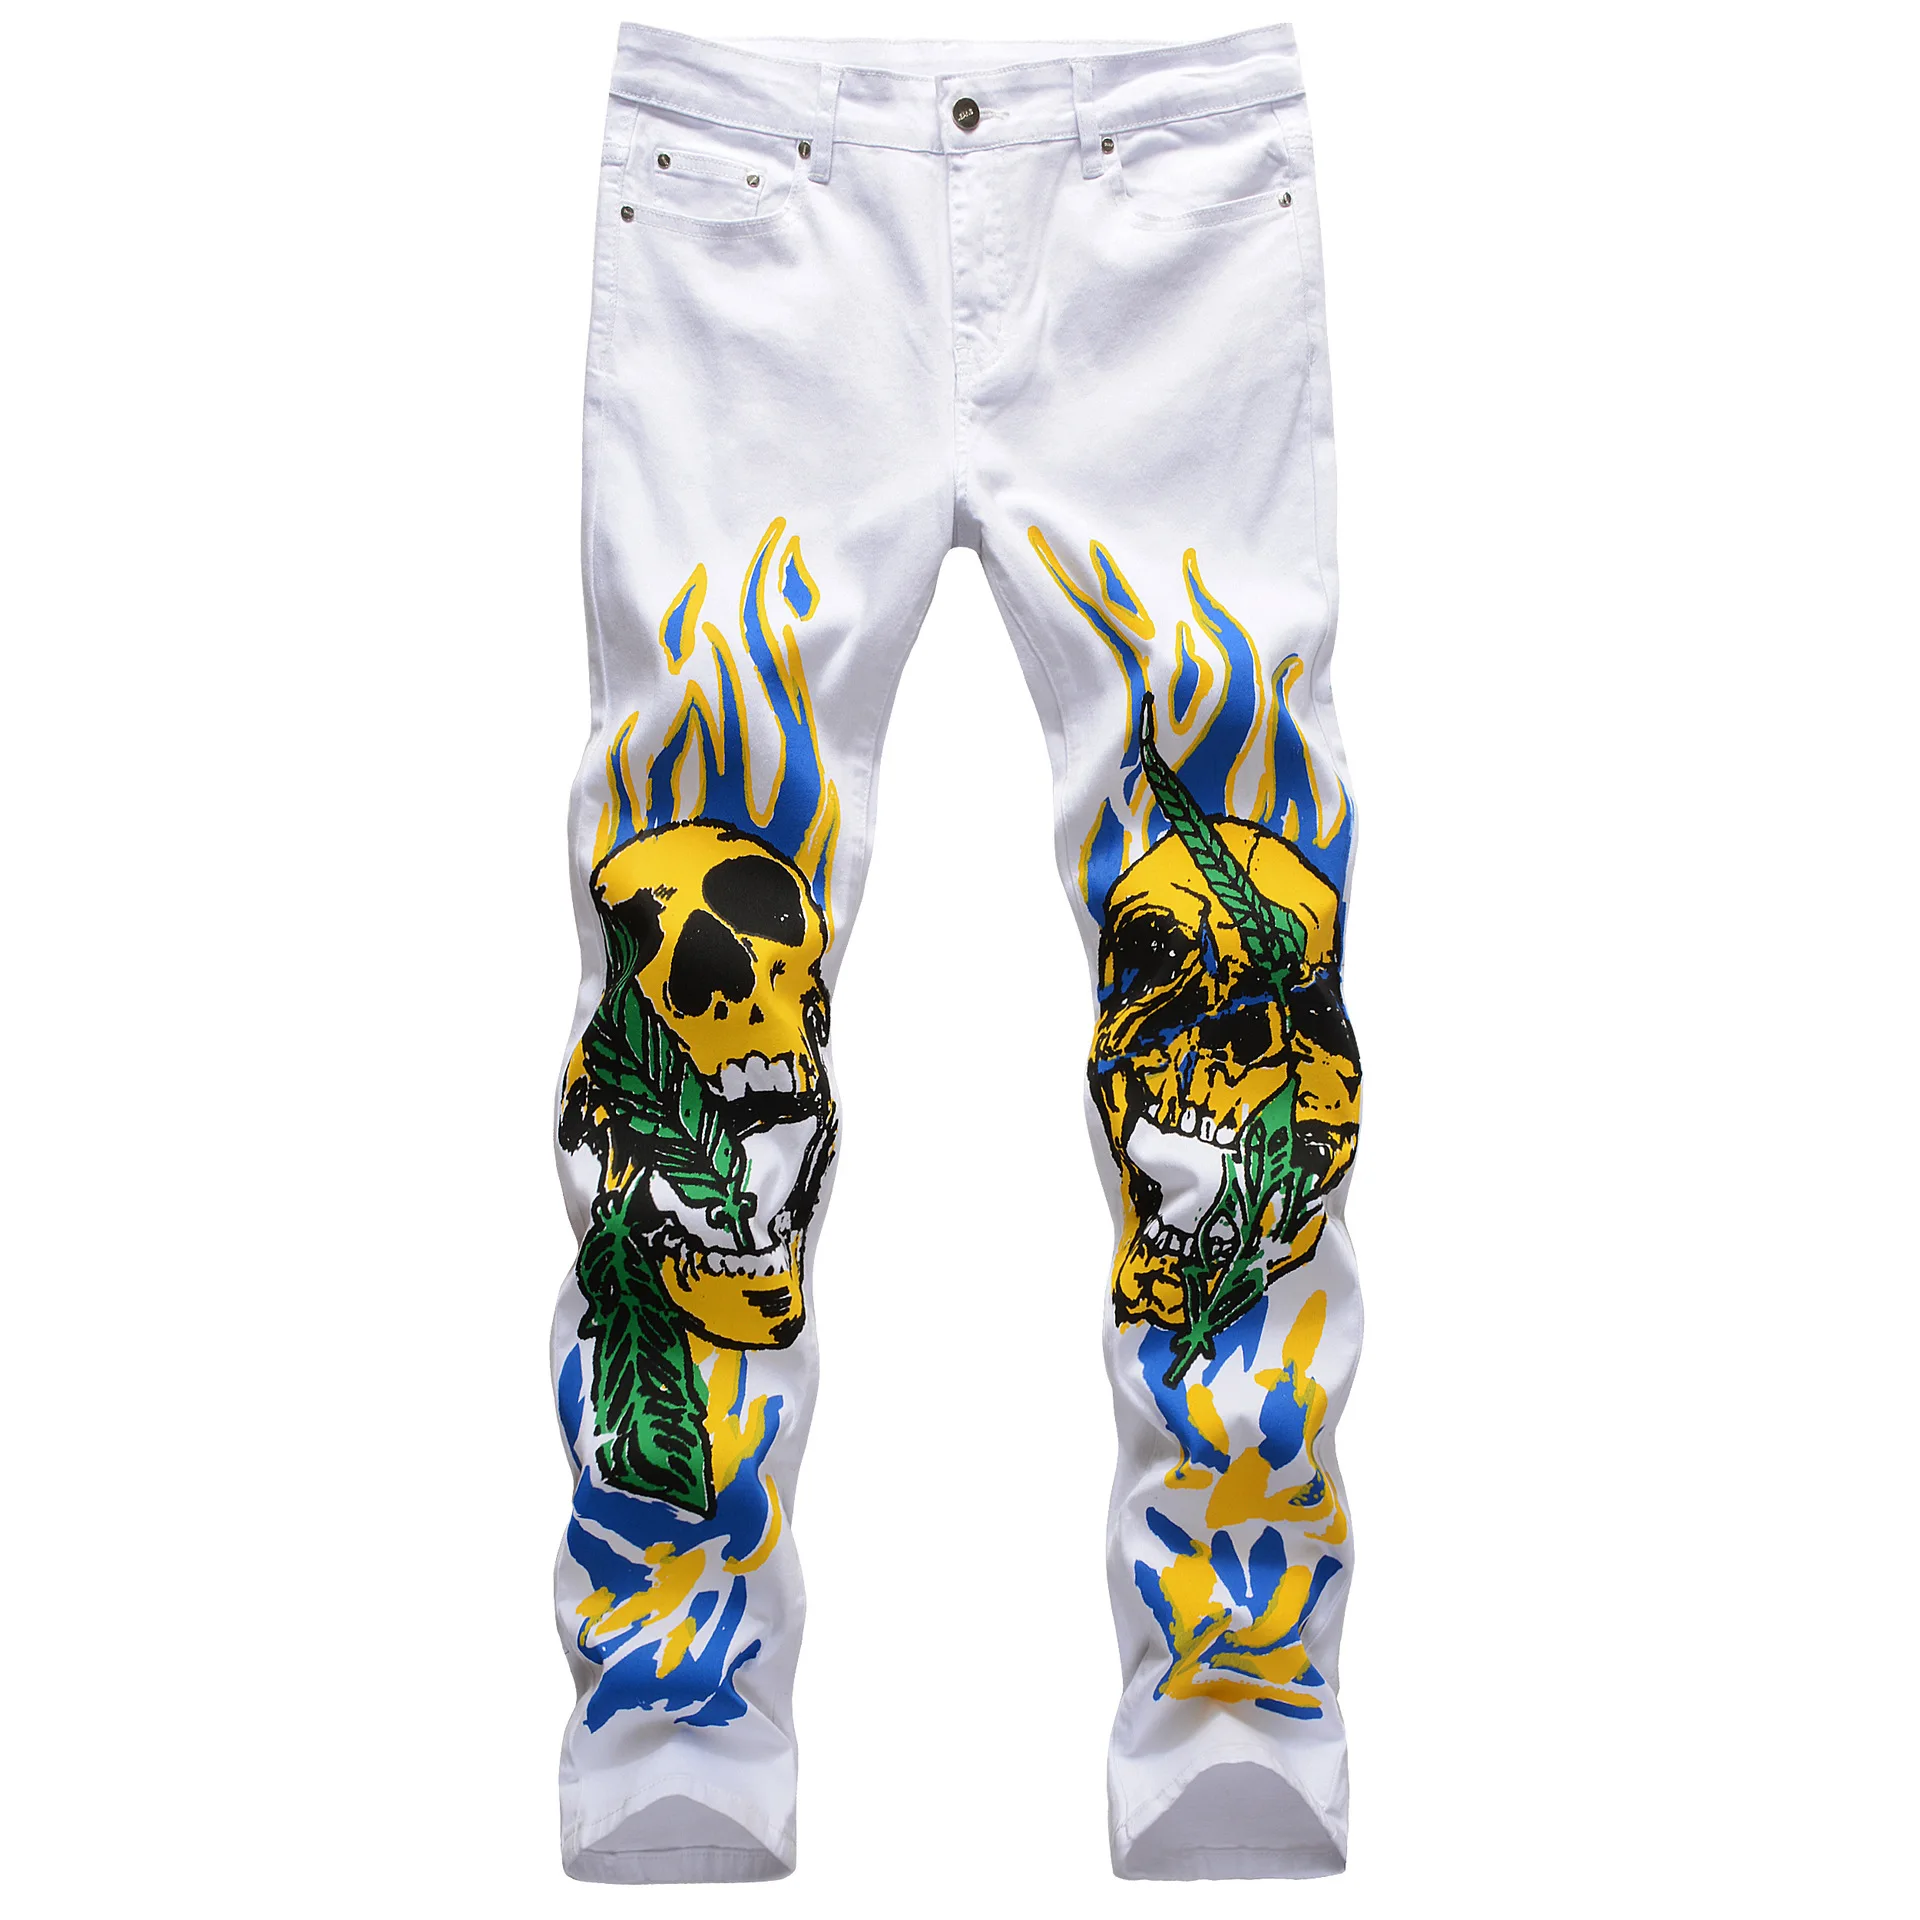 

Джинсы Jas мужские стрейчевые, облегающие брюки из денима, с 3D-принтом пламени, черепа, граффити, уличная мода, черные белые